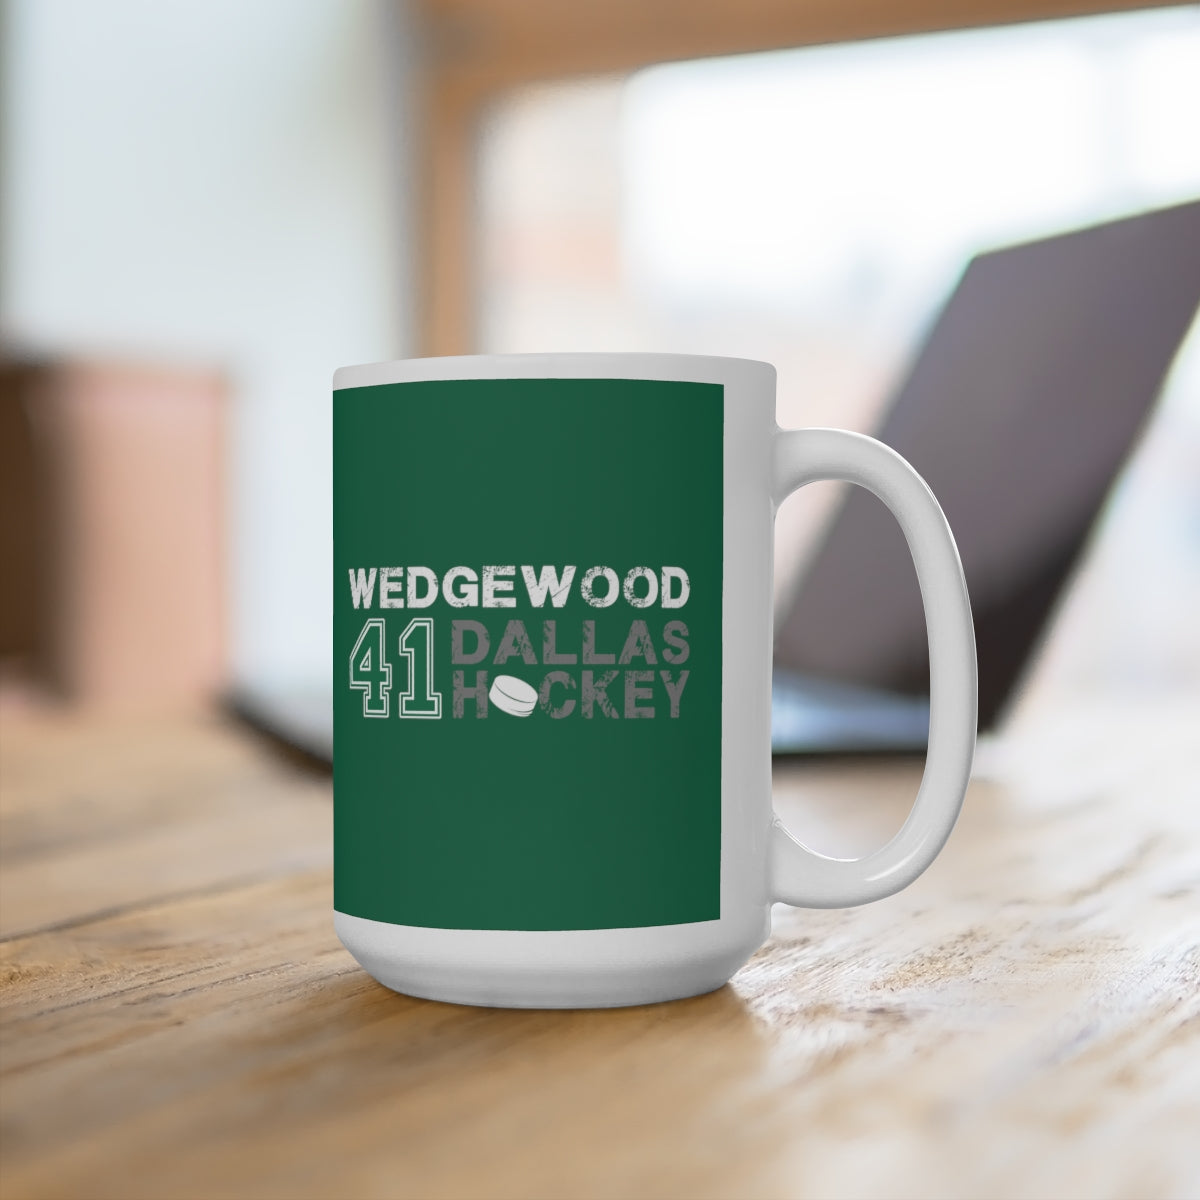 Wedgewood 41 Dallas Hockey Ceramic Coffee Mug In Victory Green, 15oz